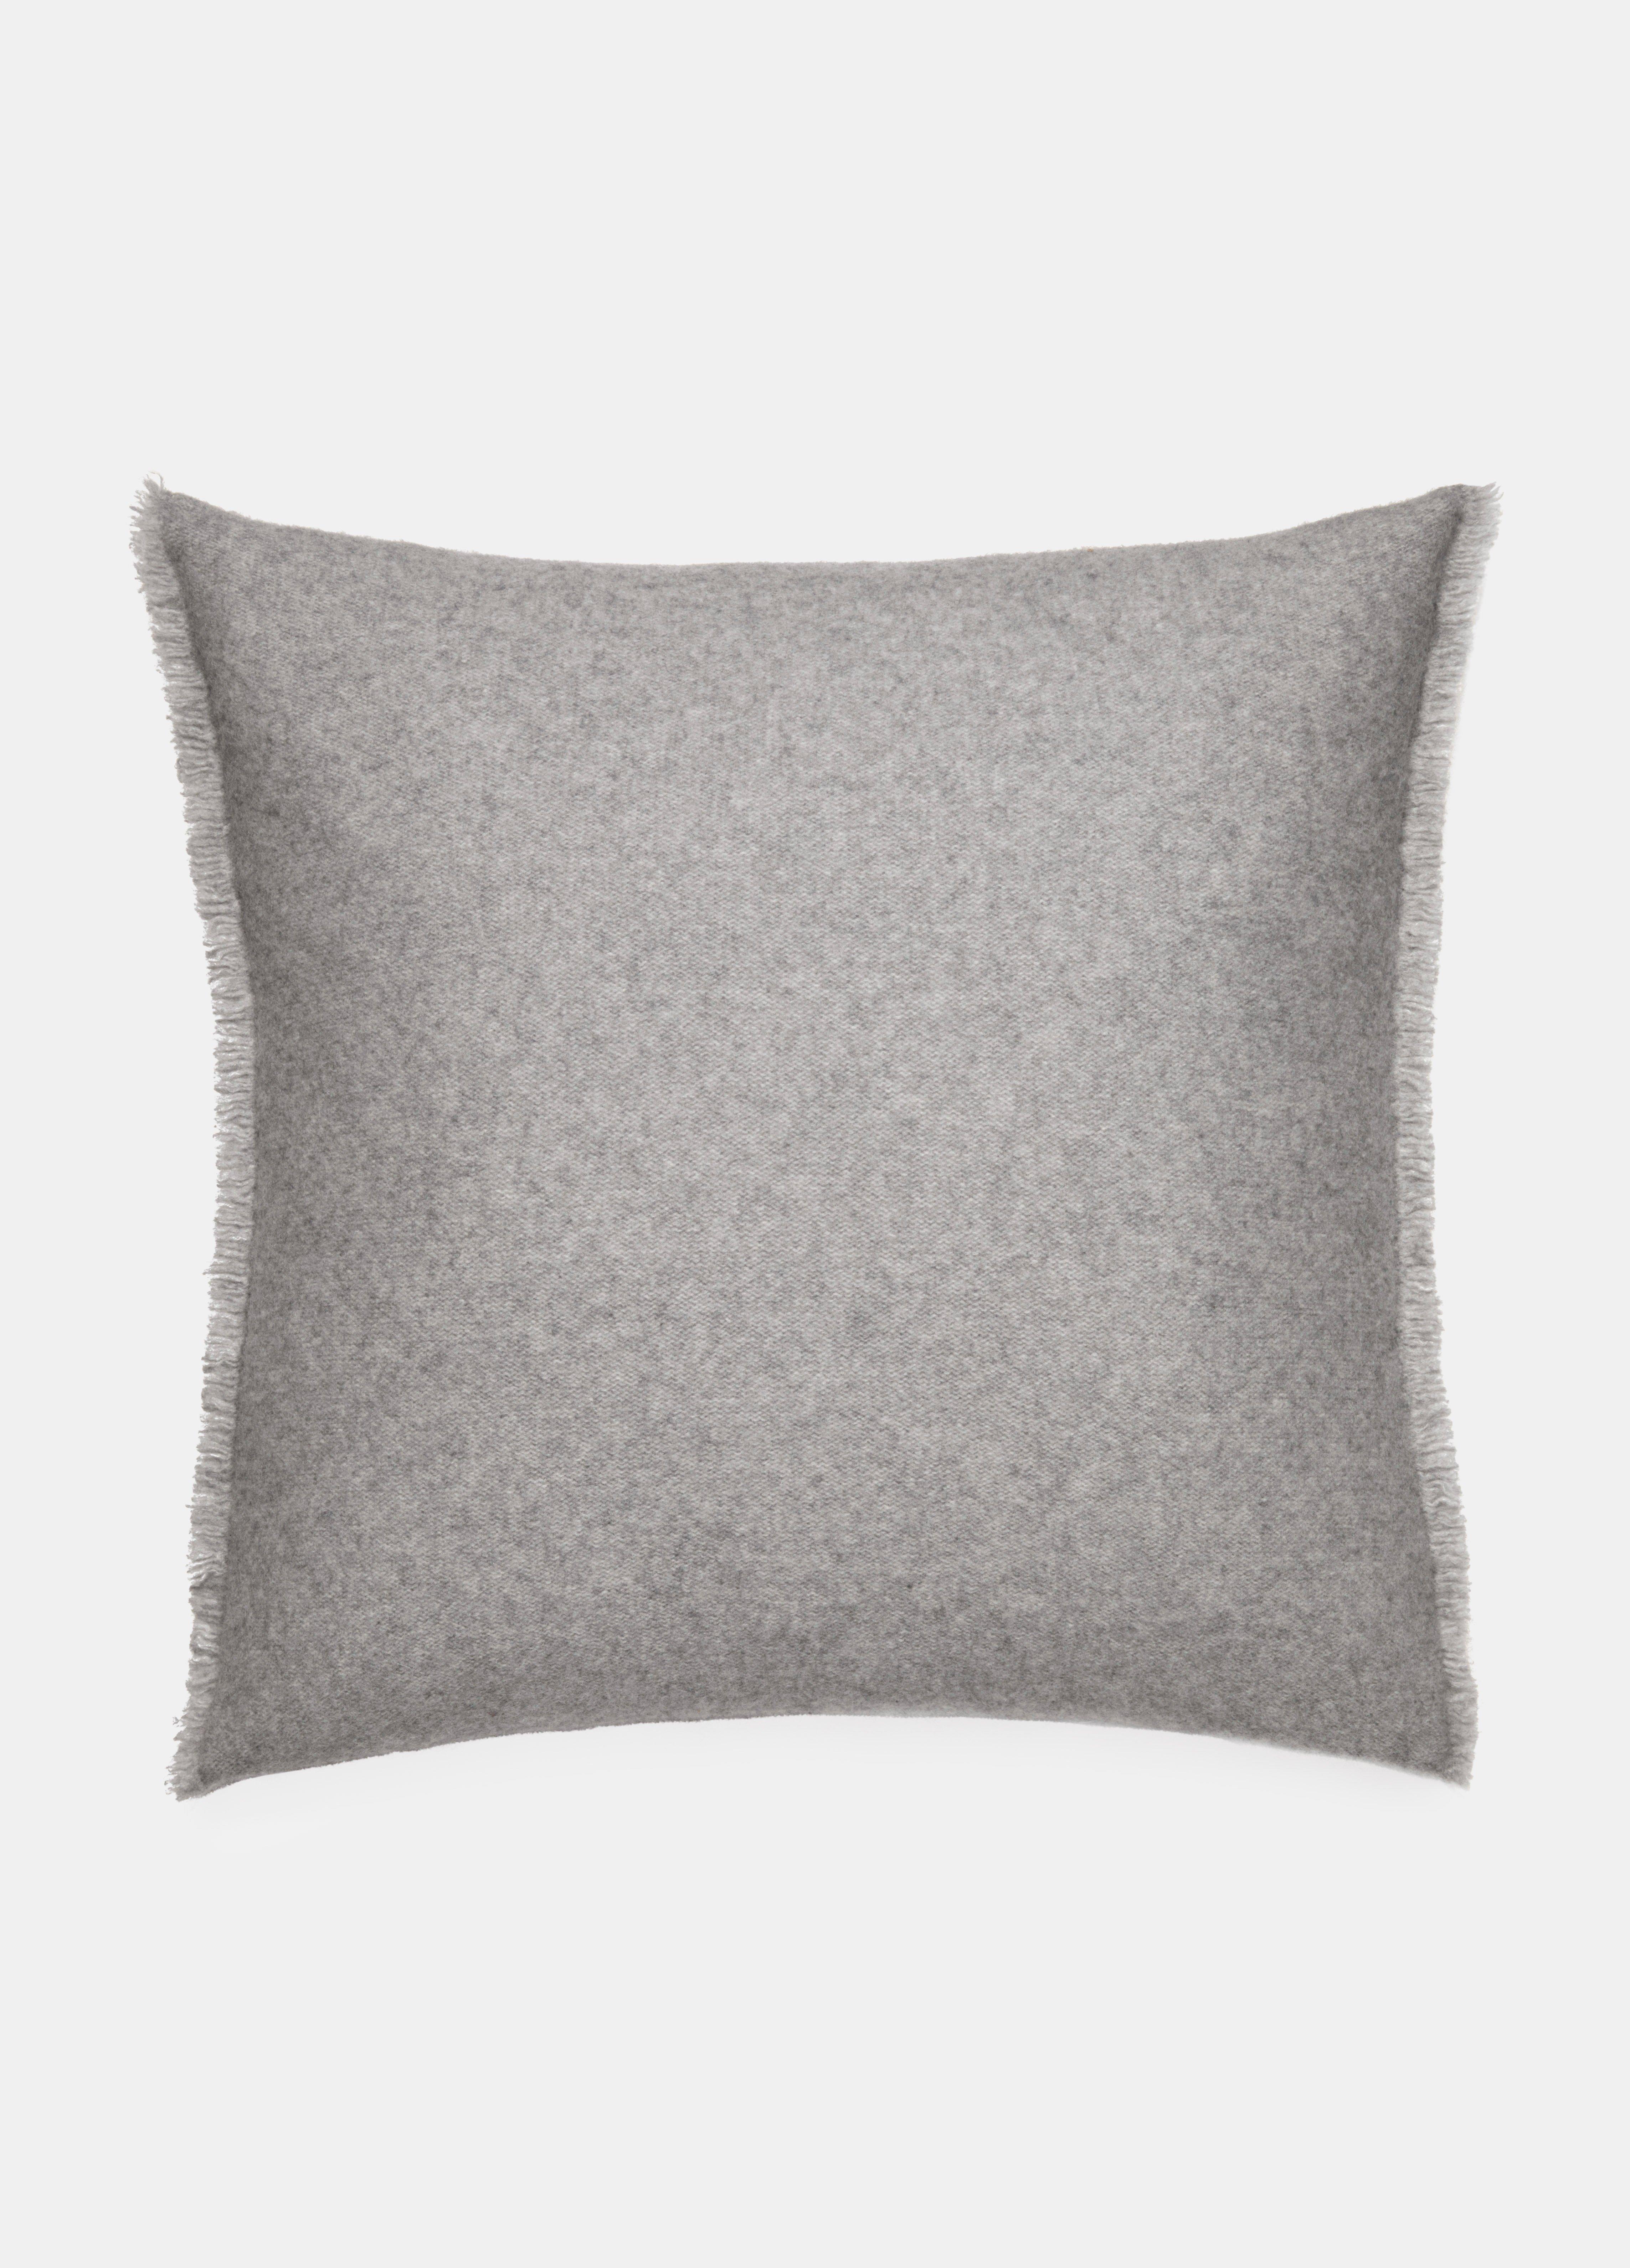 Plush Cashmere Square Pillow, Grey Vince